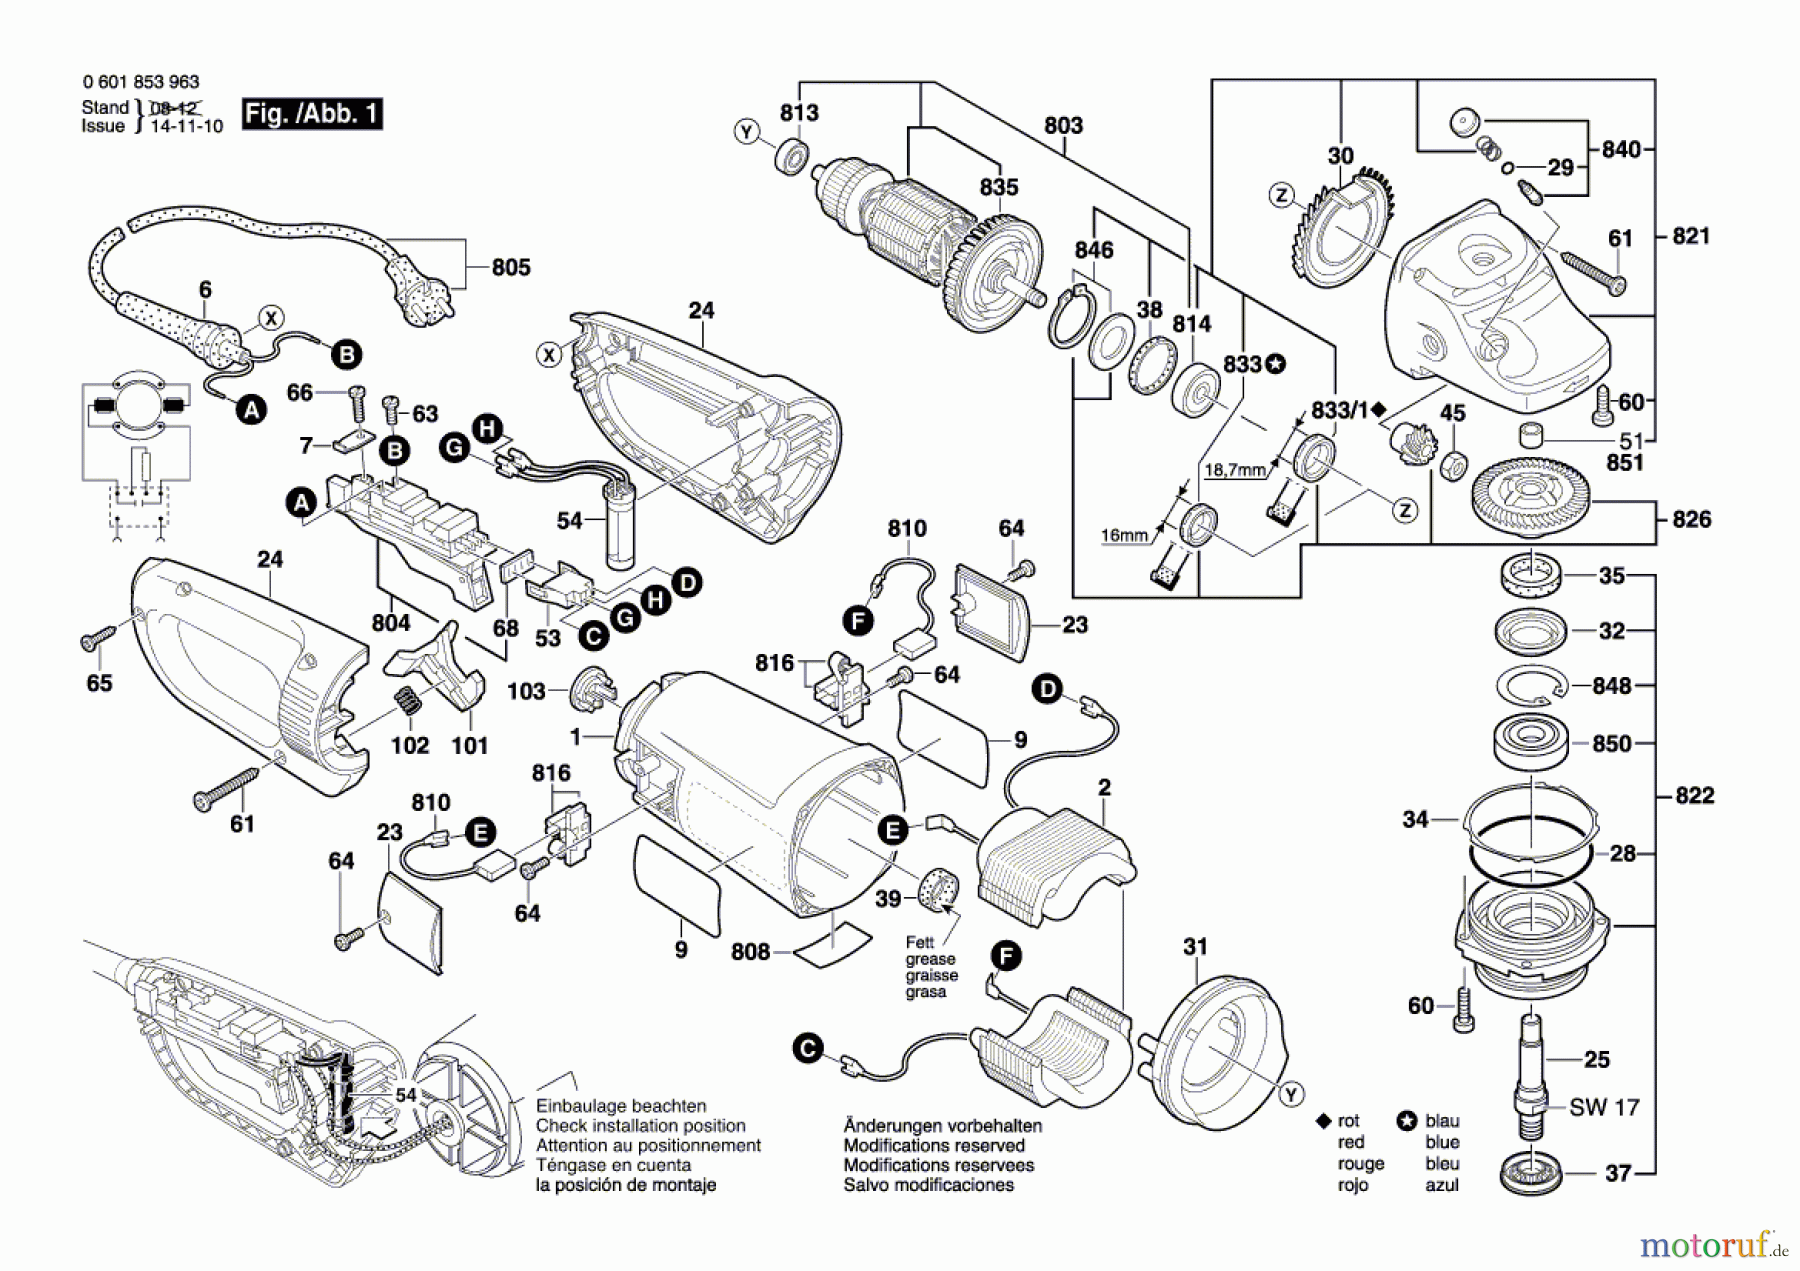  Bosch Werkzeug Winkelschleifer BTI-WKS 180 E Seite 1